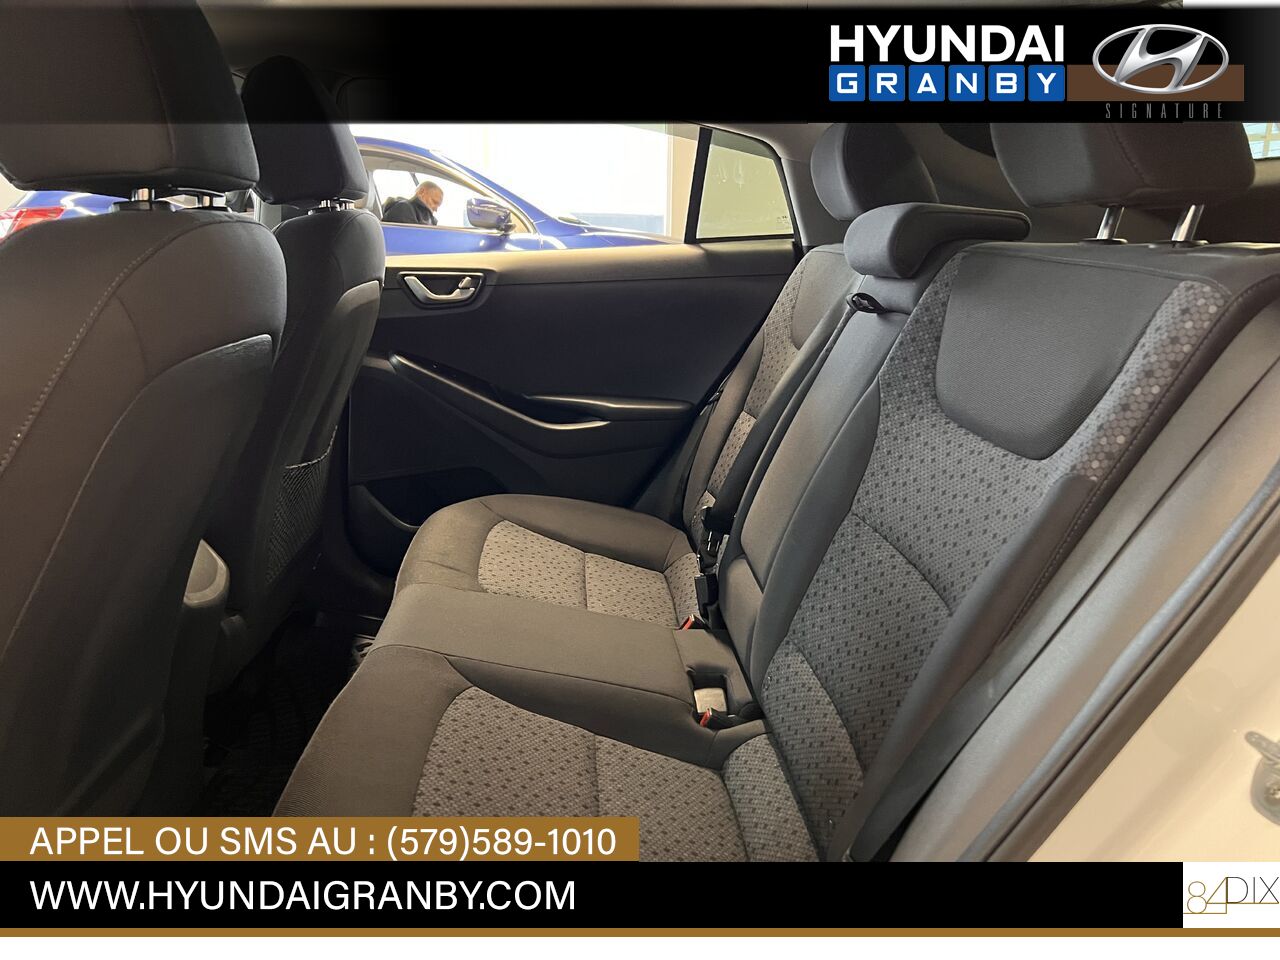 Hyundai Ioniq hybride 2017 Granby - photo #33